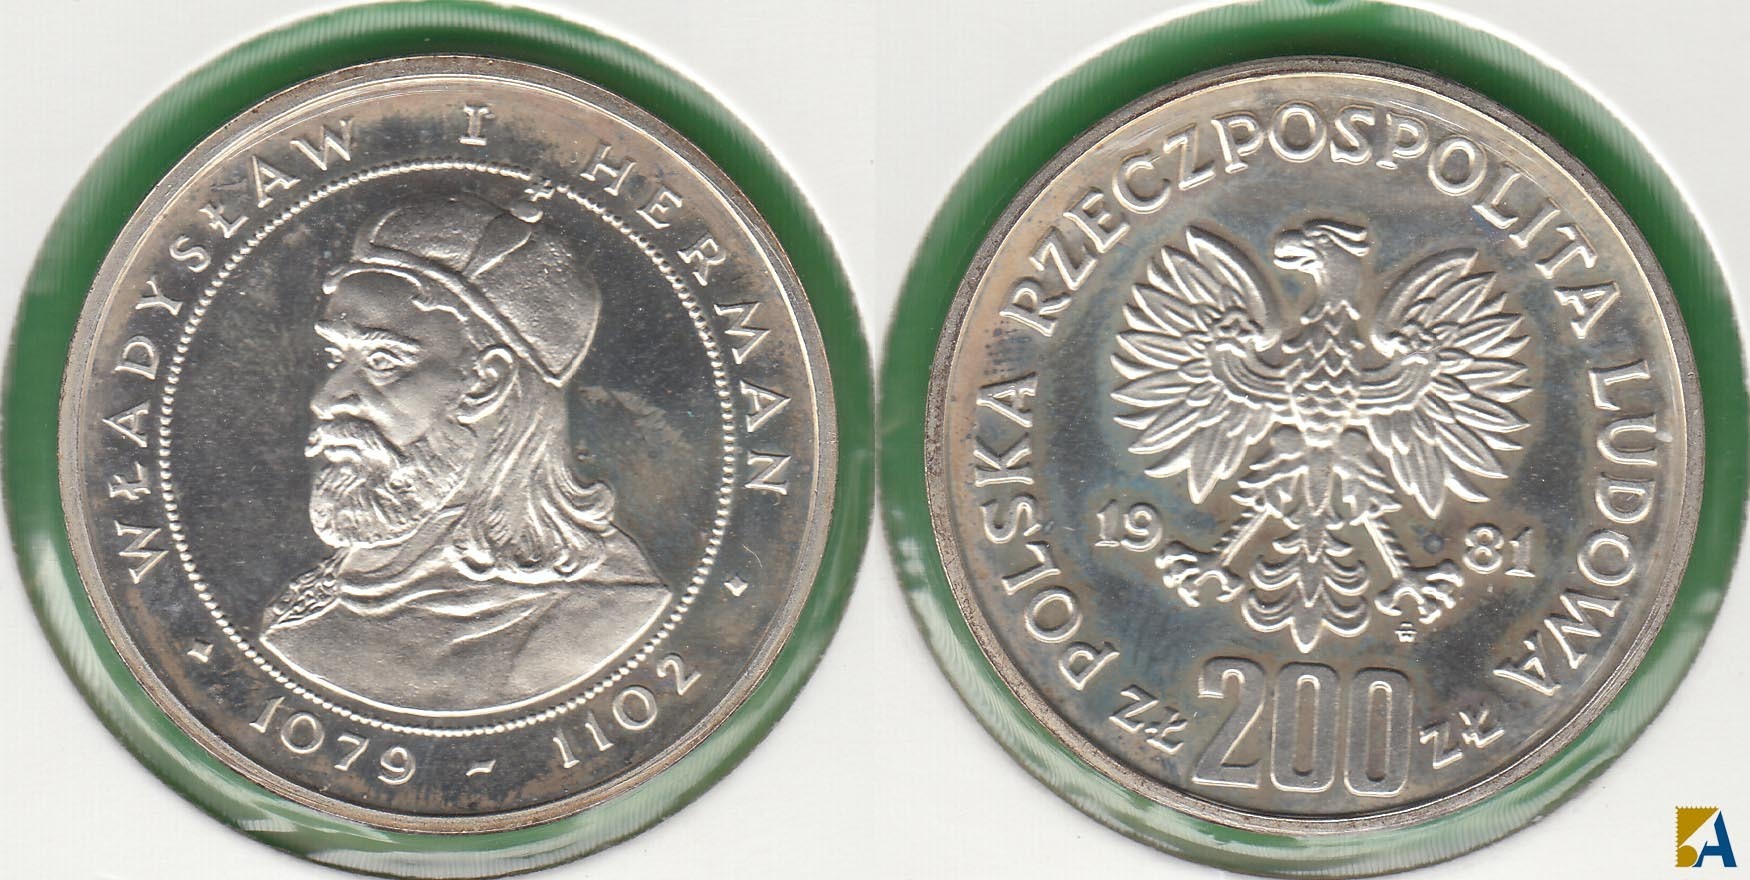 POLONIA - POLSKA. 200 ZLOTYCH DE 1981. PLATA 0.750.